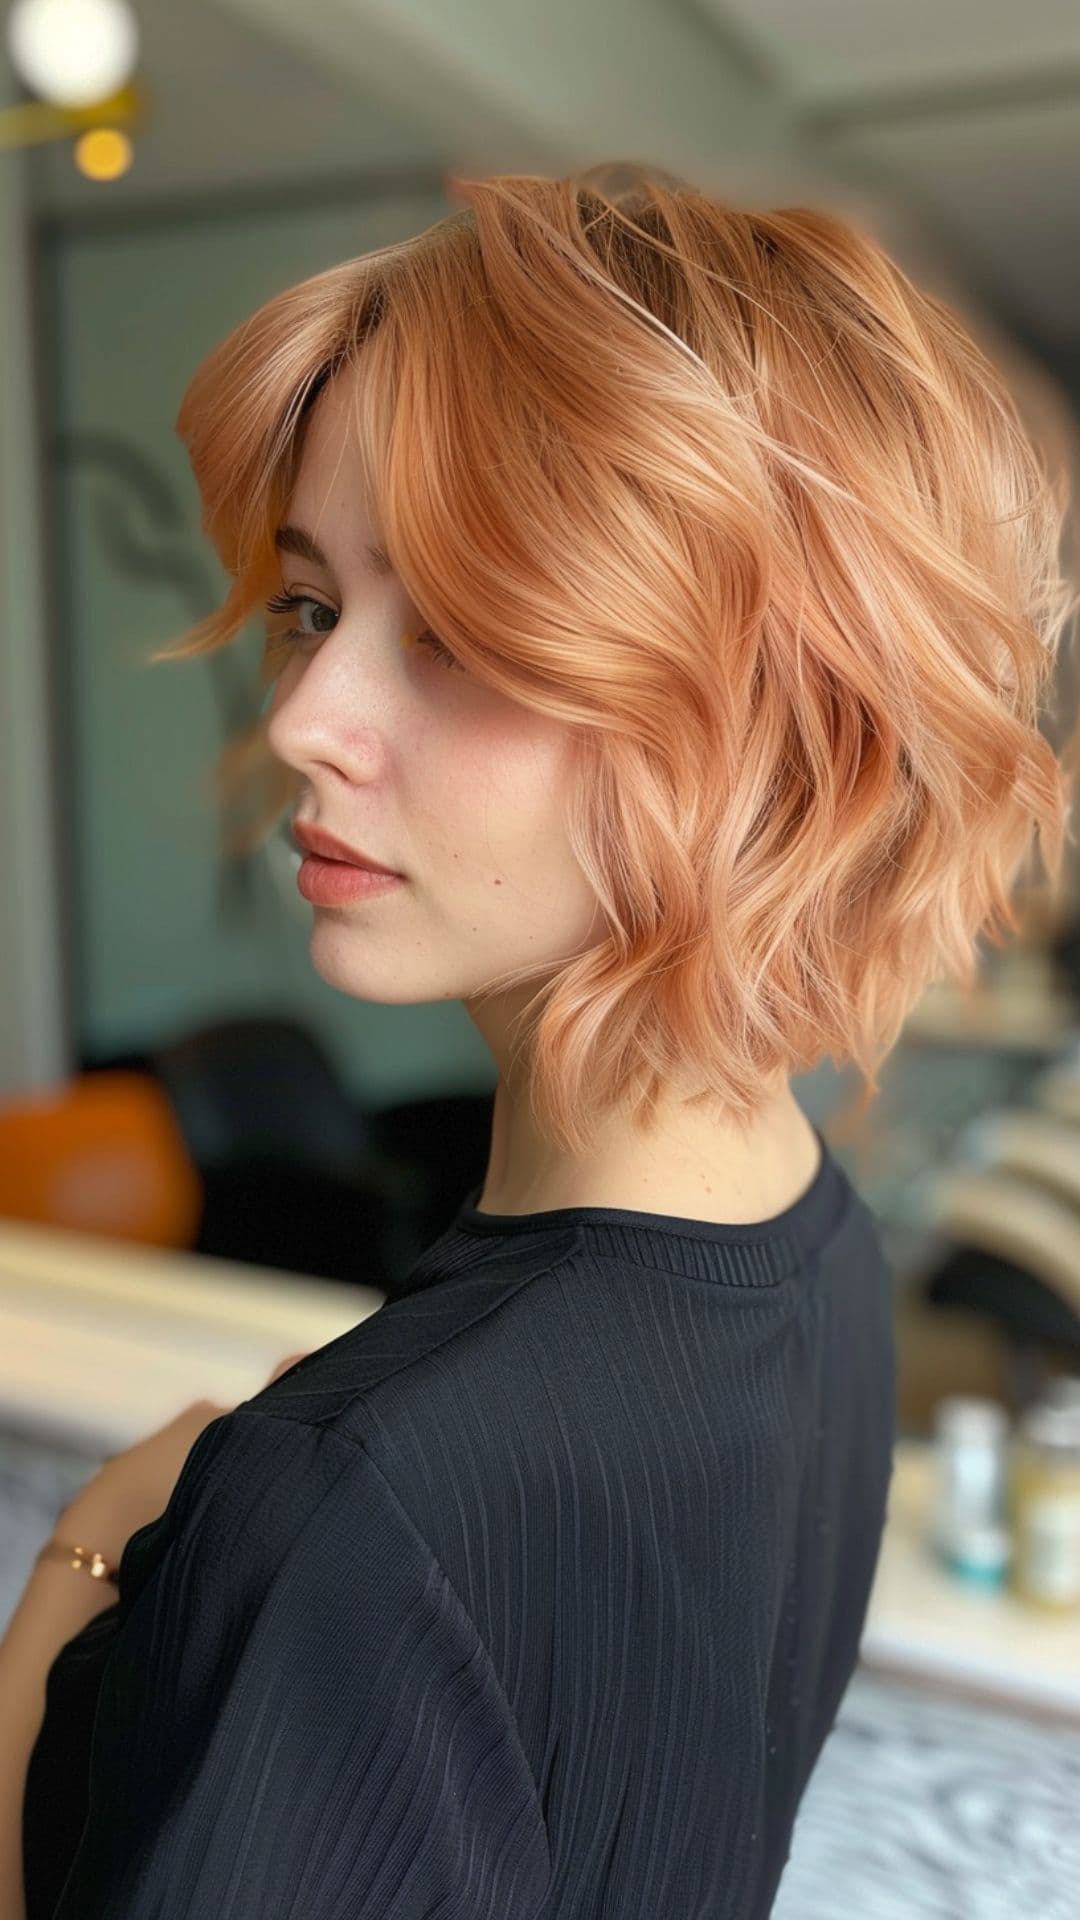 A woman modelling a short peach hair.